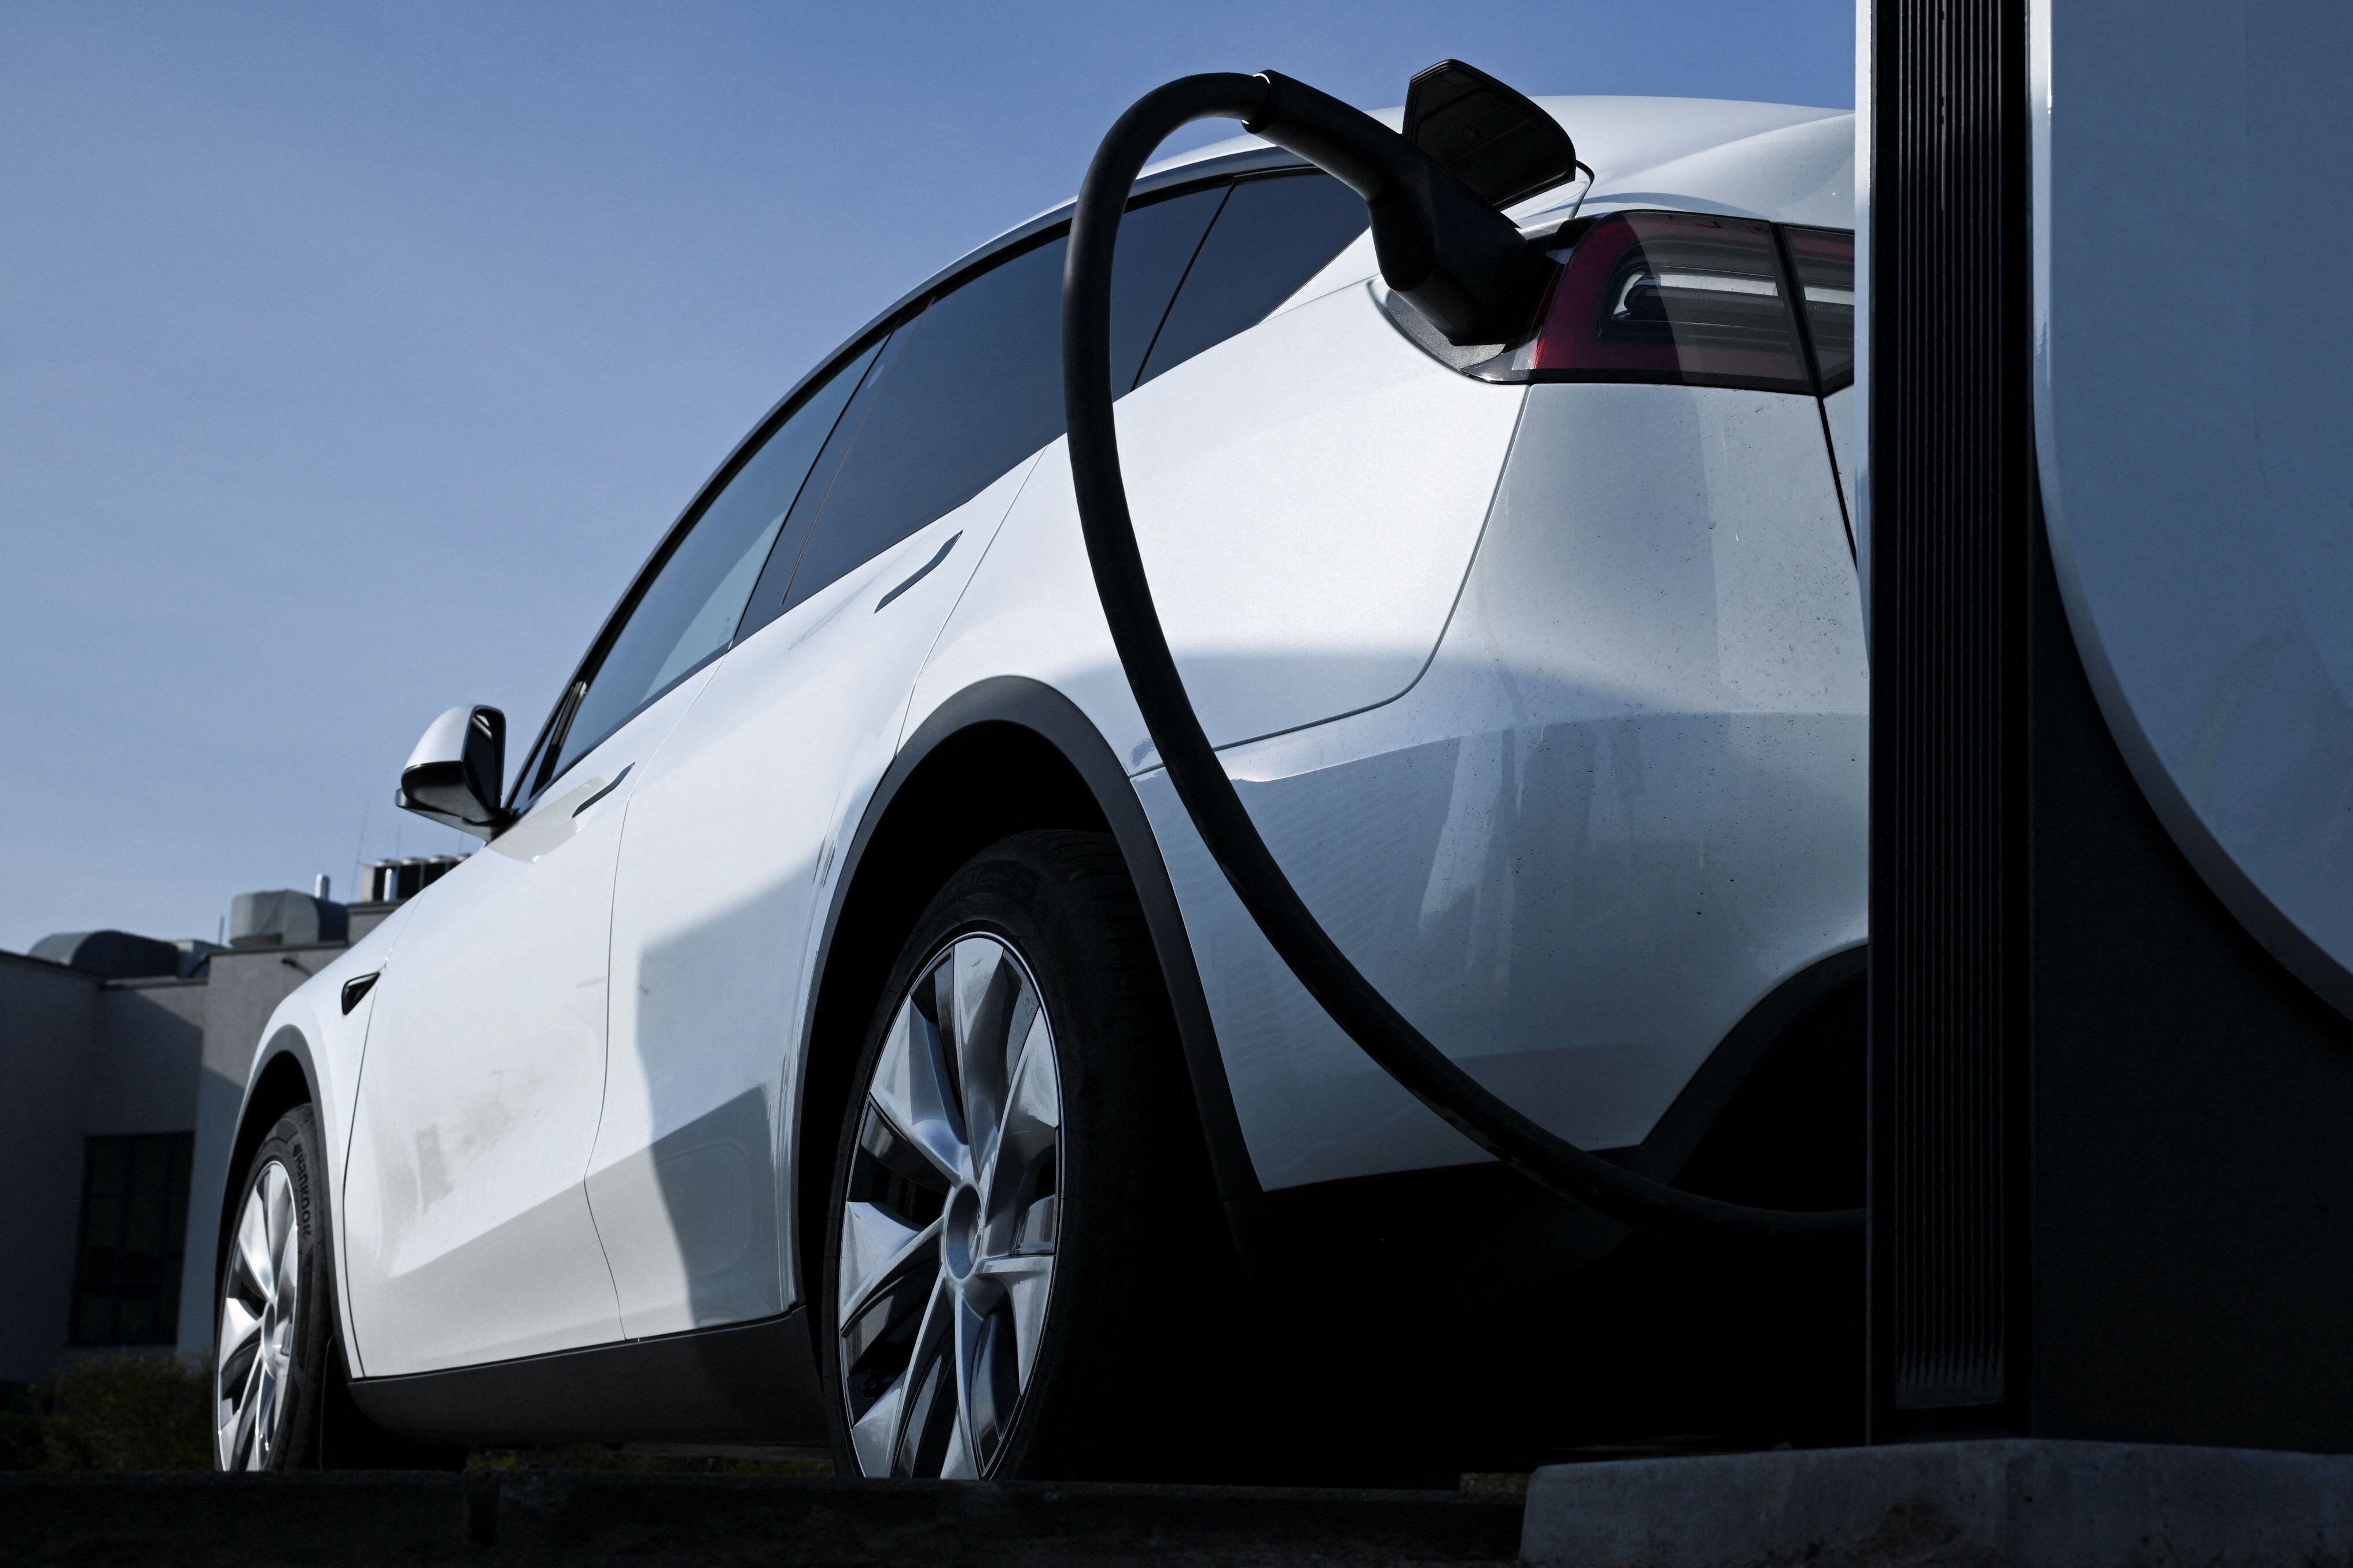 Los autos eléctricos pueden cargar sus baterías por las noches, en horarios de menor demanda de consumo general. REUTERS/Annegret Hilse